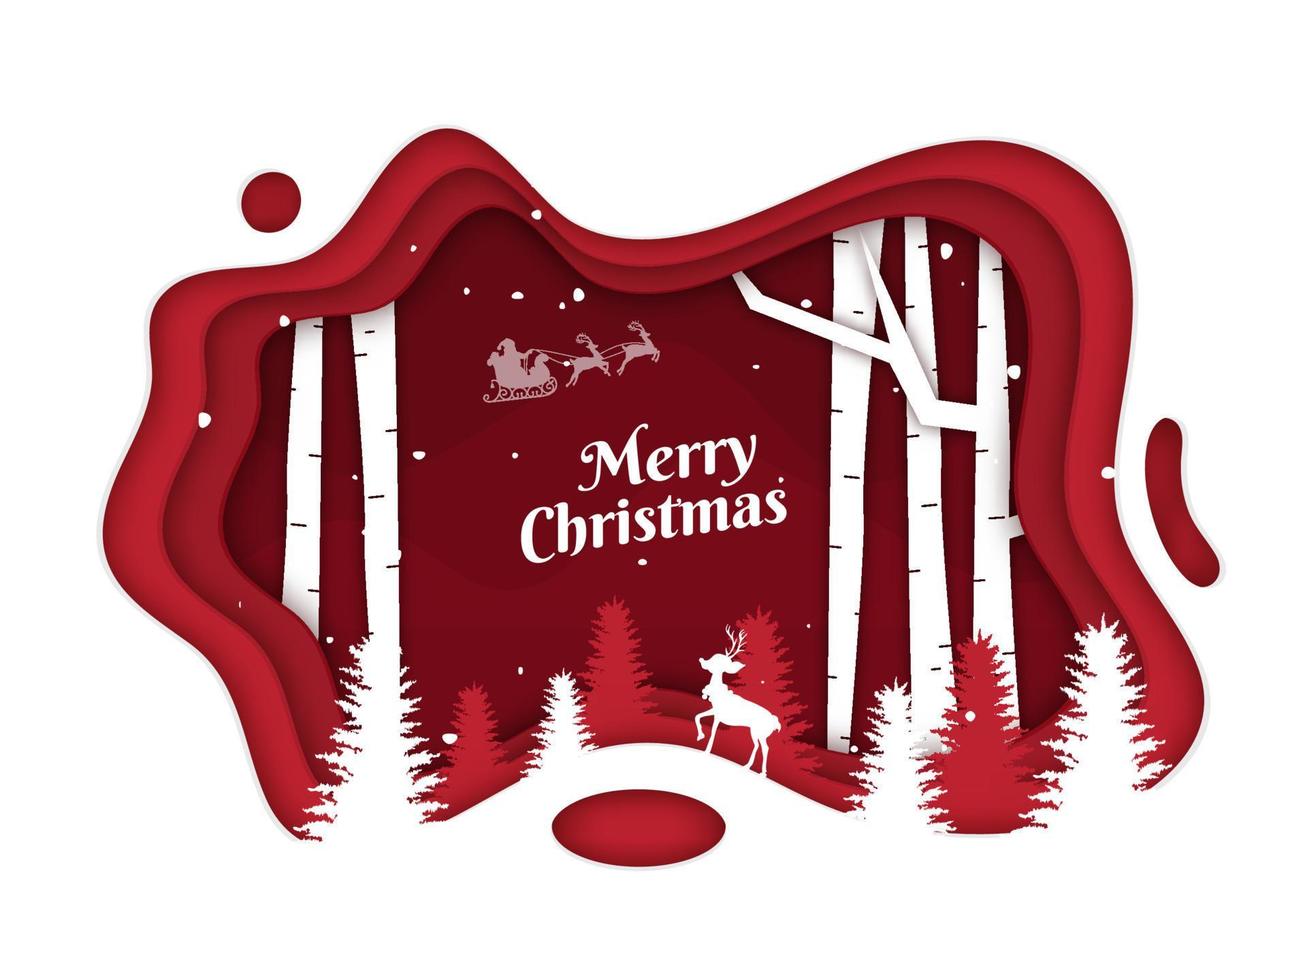 vermelho e branco papel camada cortar fundo com silhueta rena, árvores para alegre Natal celebração. vetor